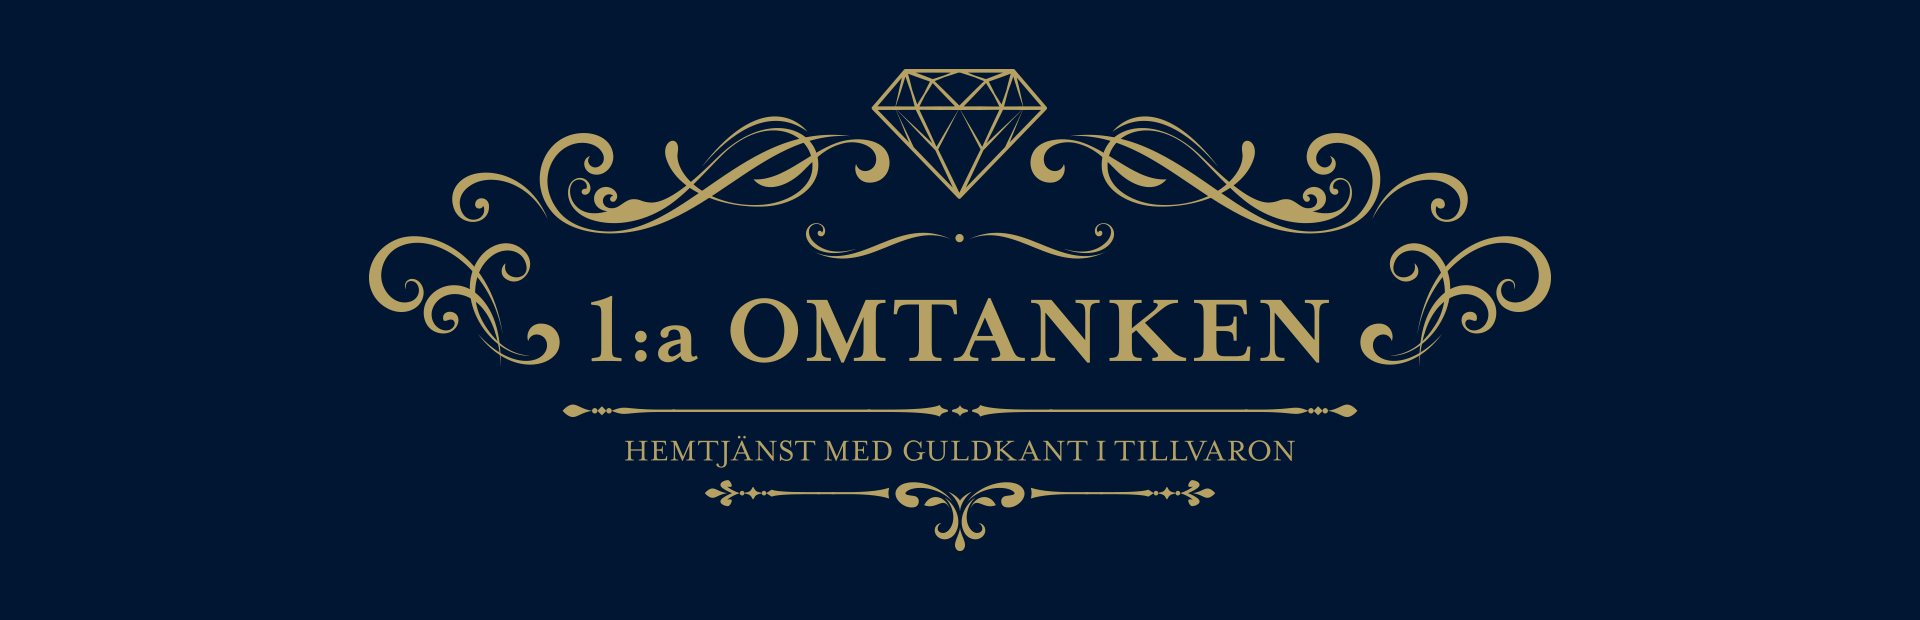 omtanken-slide-logo